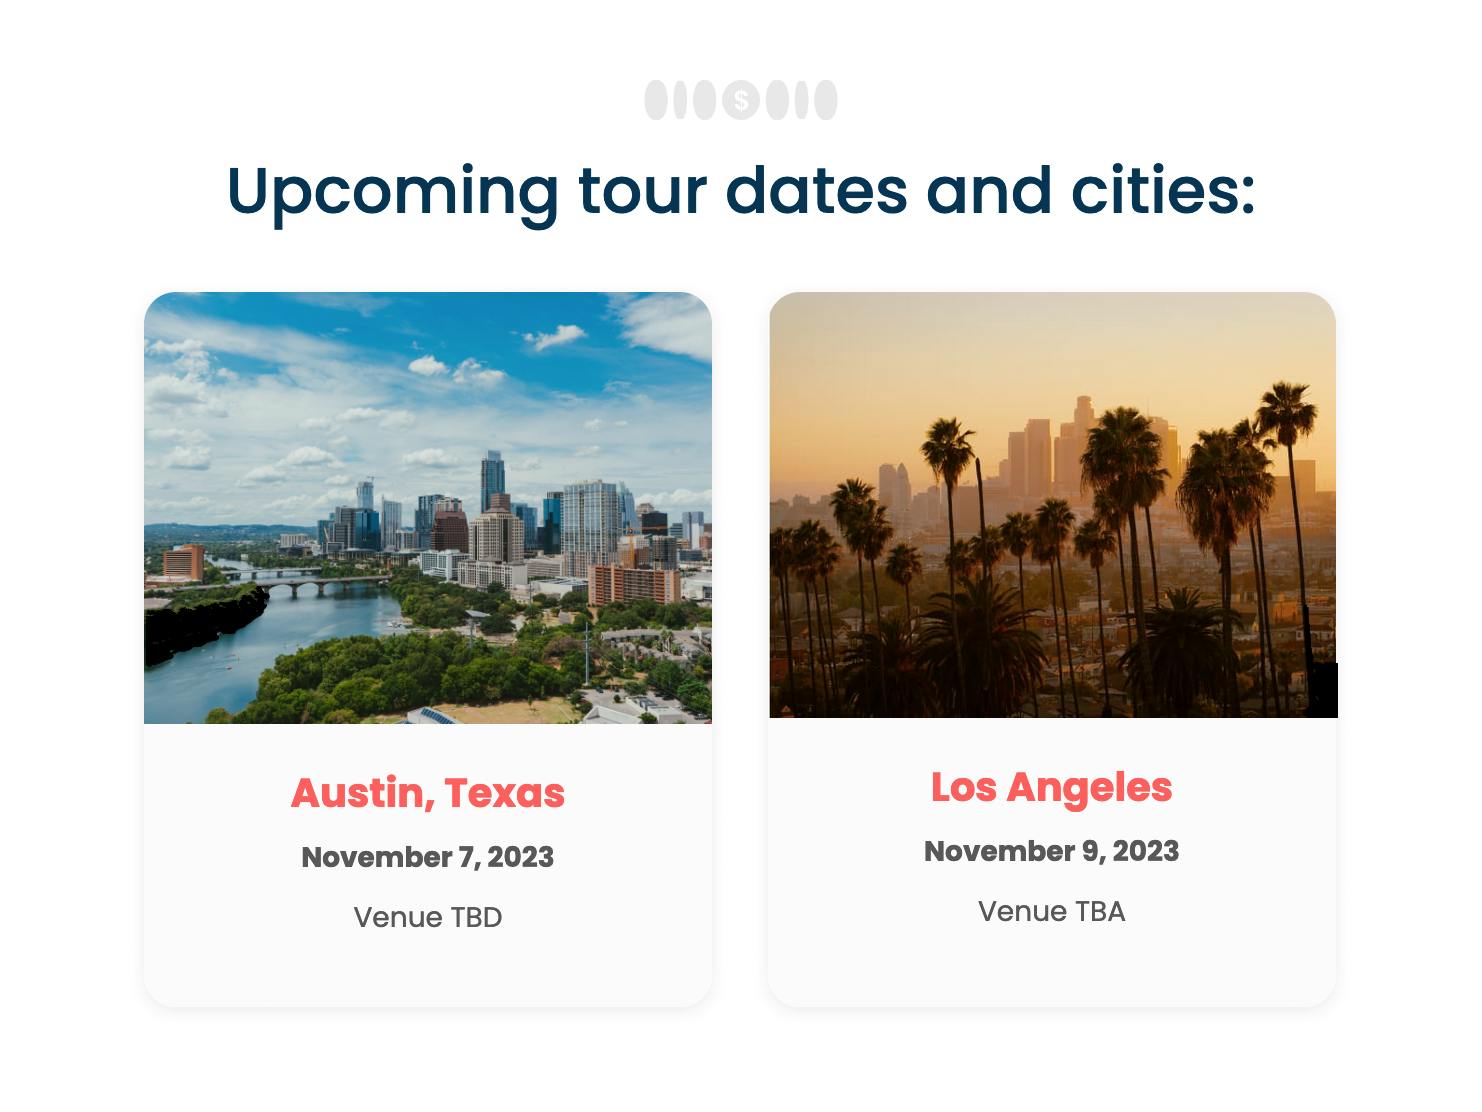 Austin and Los Angeles Tour Dates